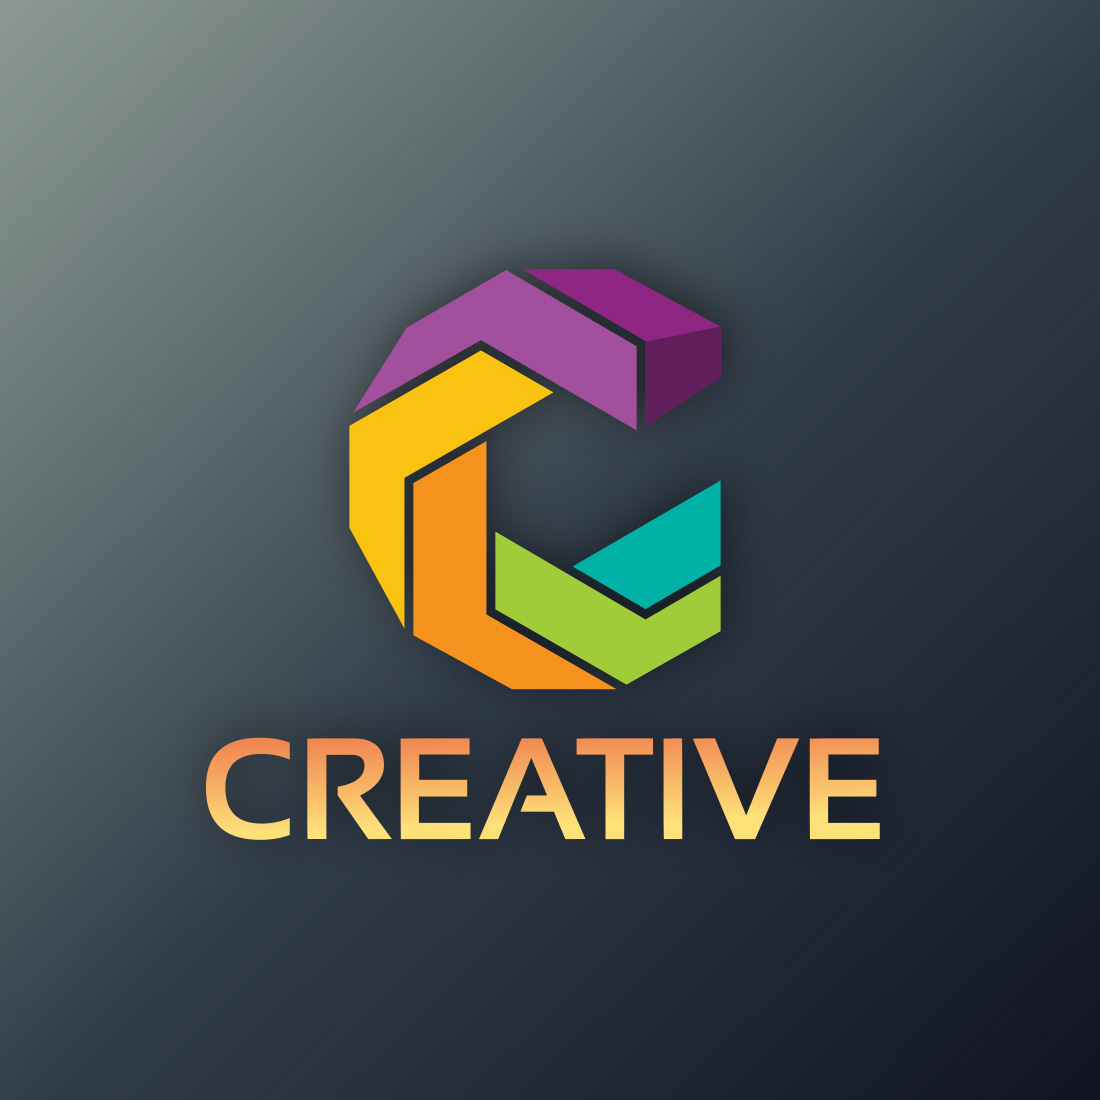 Creative logo design preview image.